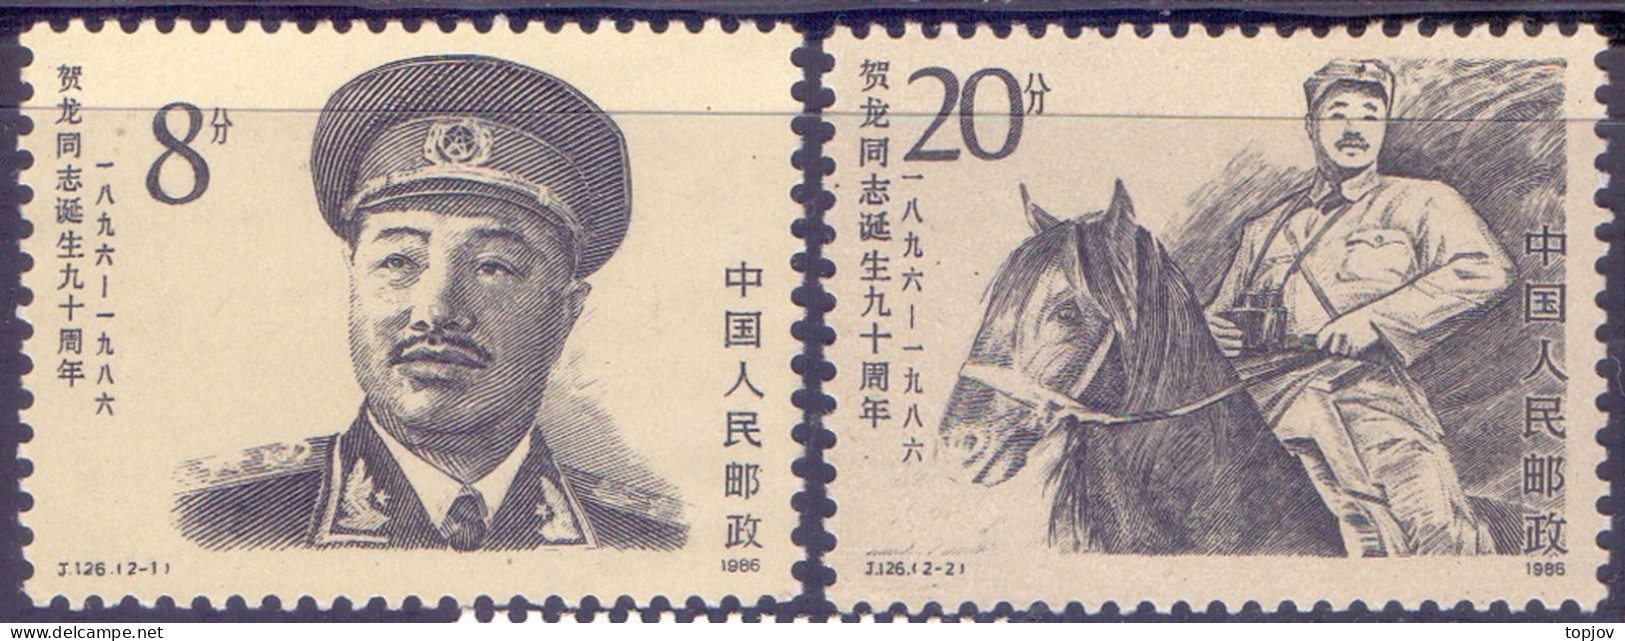 CHINA -  HE LONG - HORSE J.126 - **MNH - 1986 - Kraanvogels En Kraanvogelachtigen